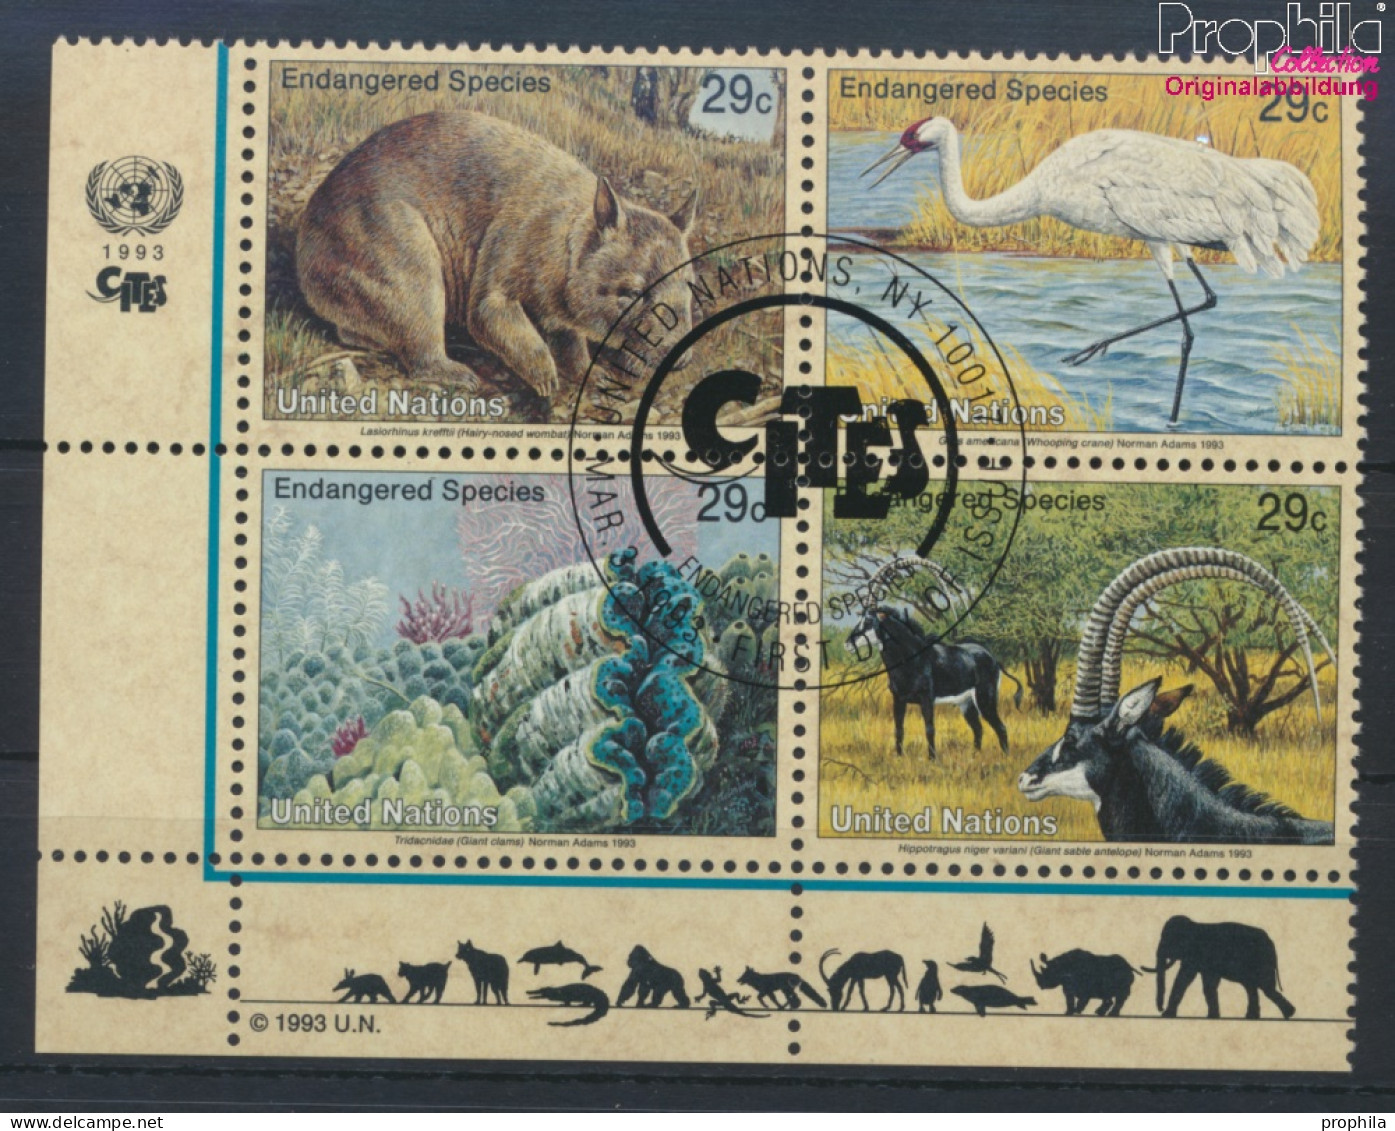 UNO - New York 644-647 Viererblock (kompl.Ausg.) Gestempelt 1993 Gefährdete Tiere (10036288 - Used Stamps